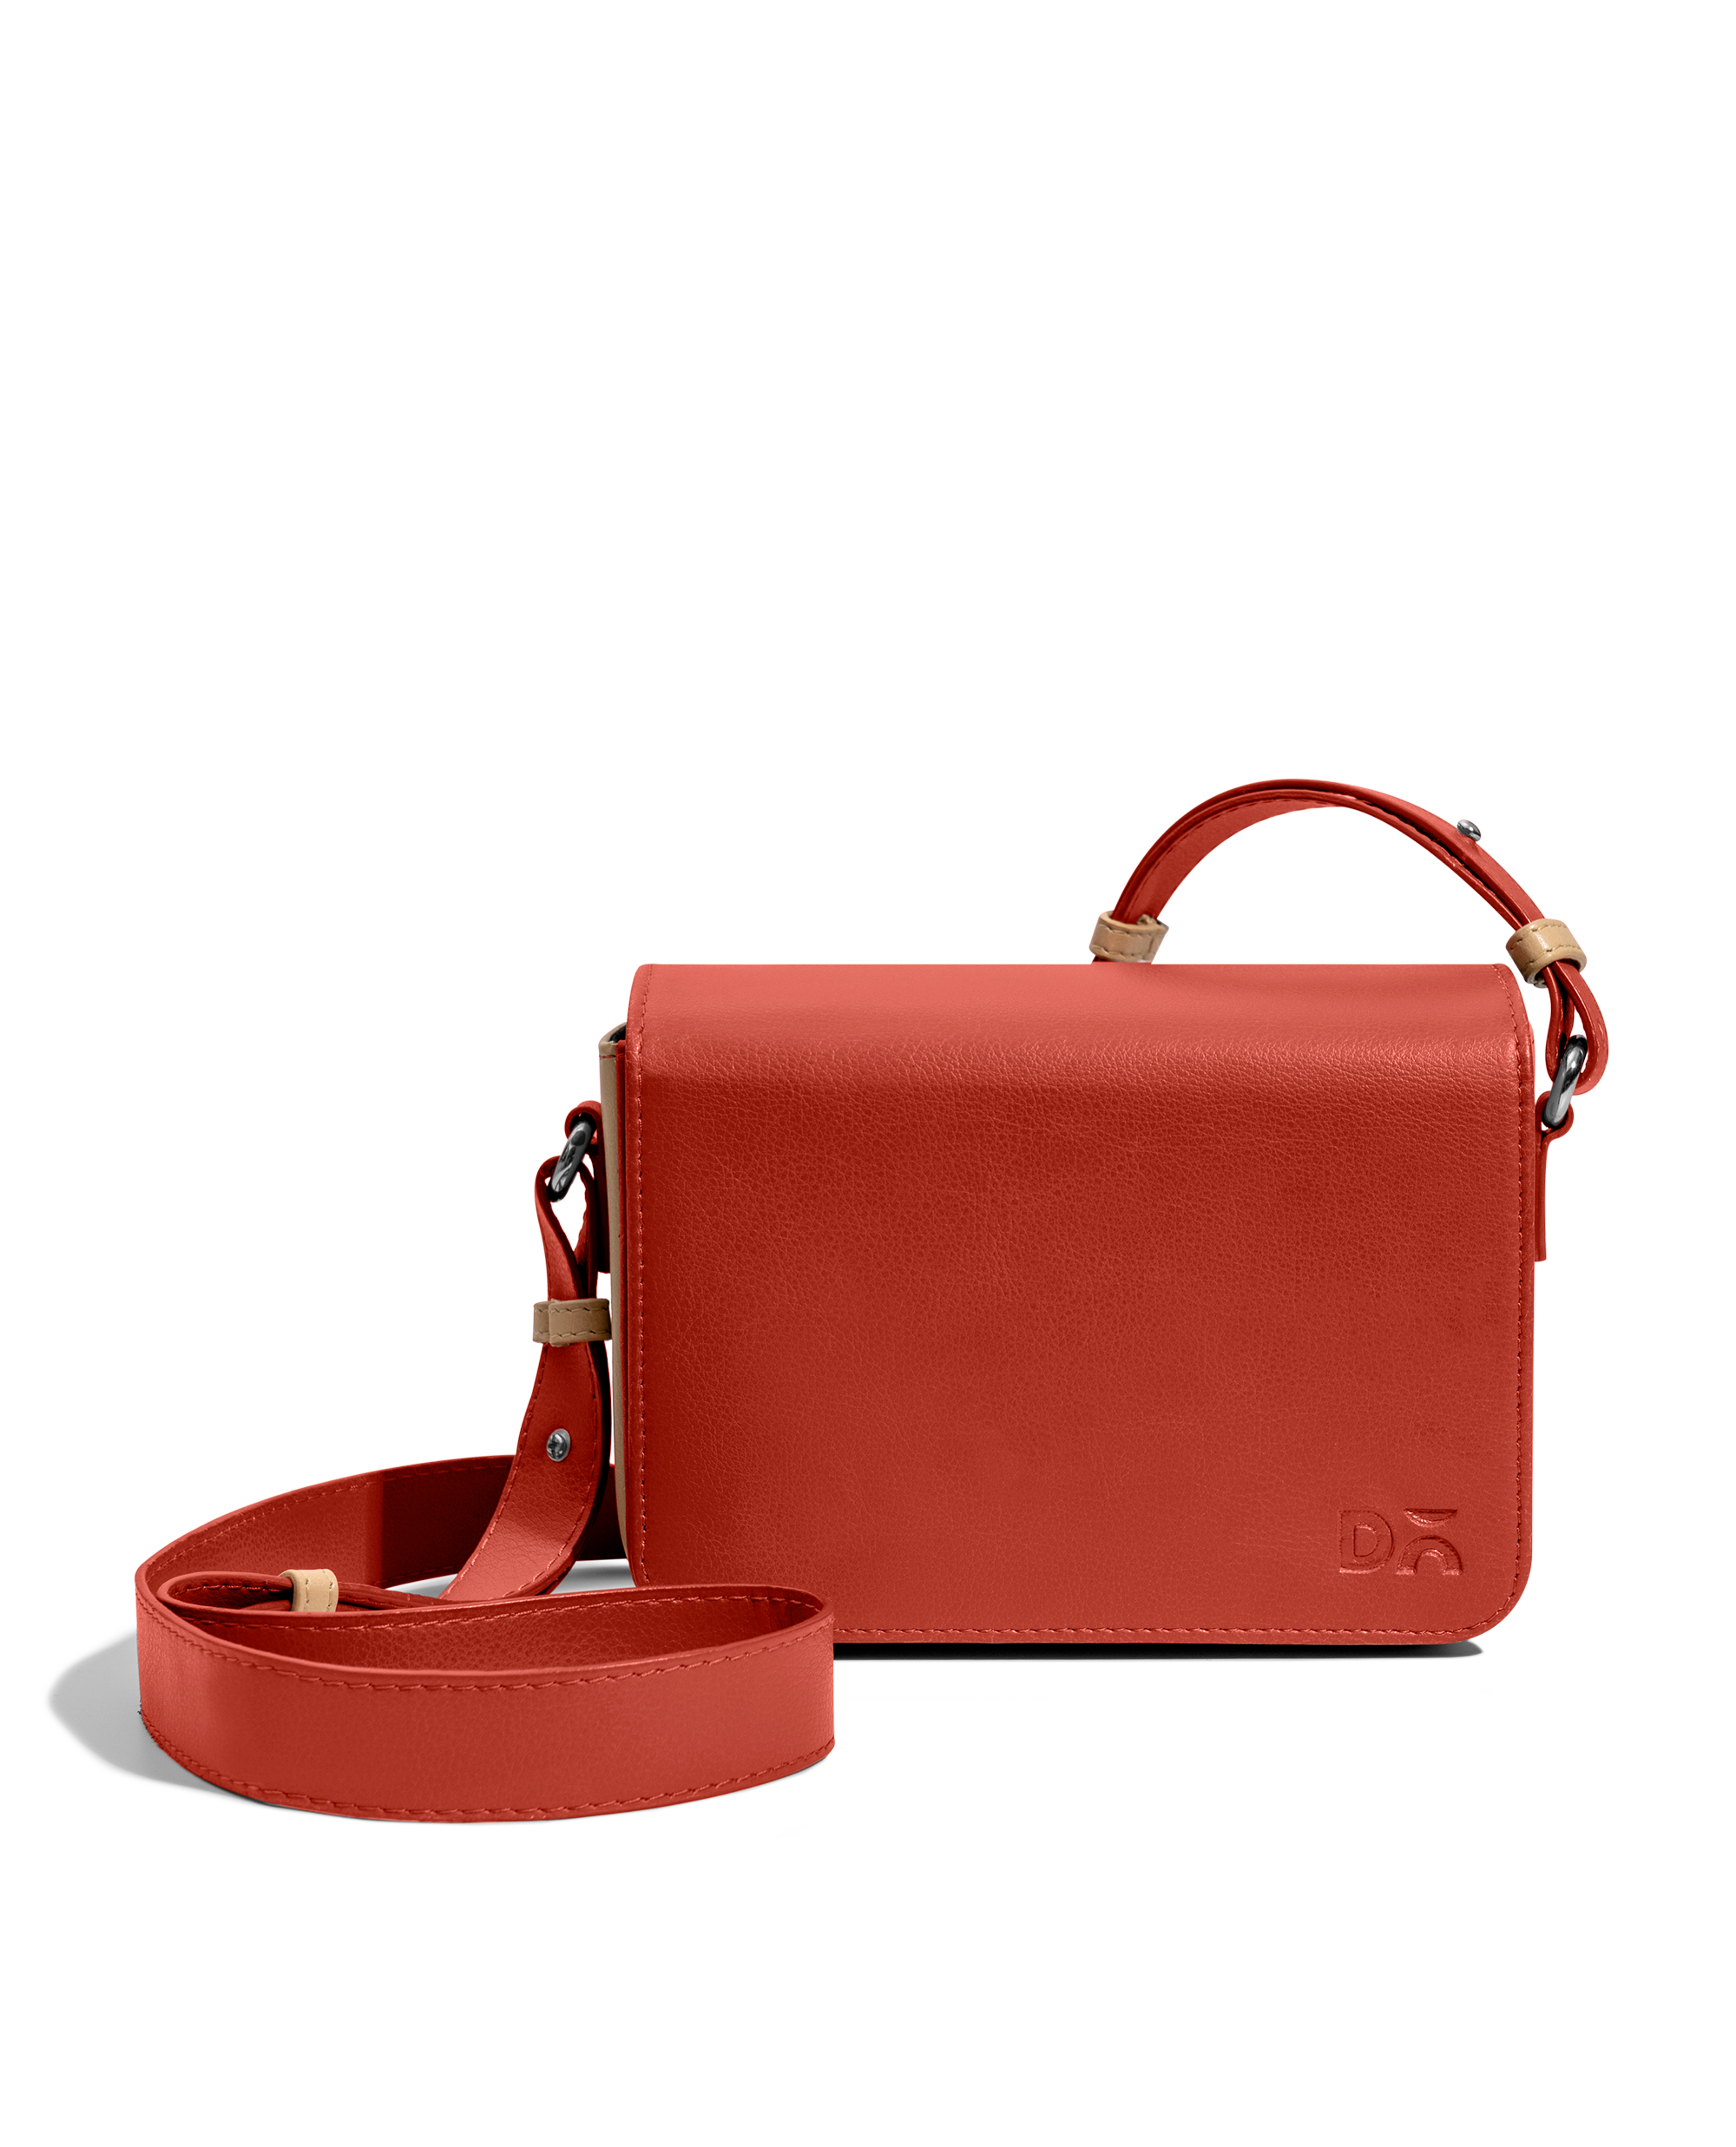 ❤️Coach Swinger Black/Brass C0638 Leather Shoulder Bag | eBay